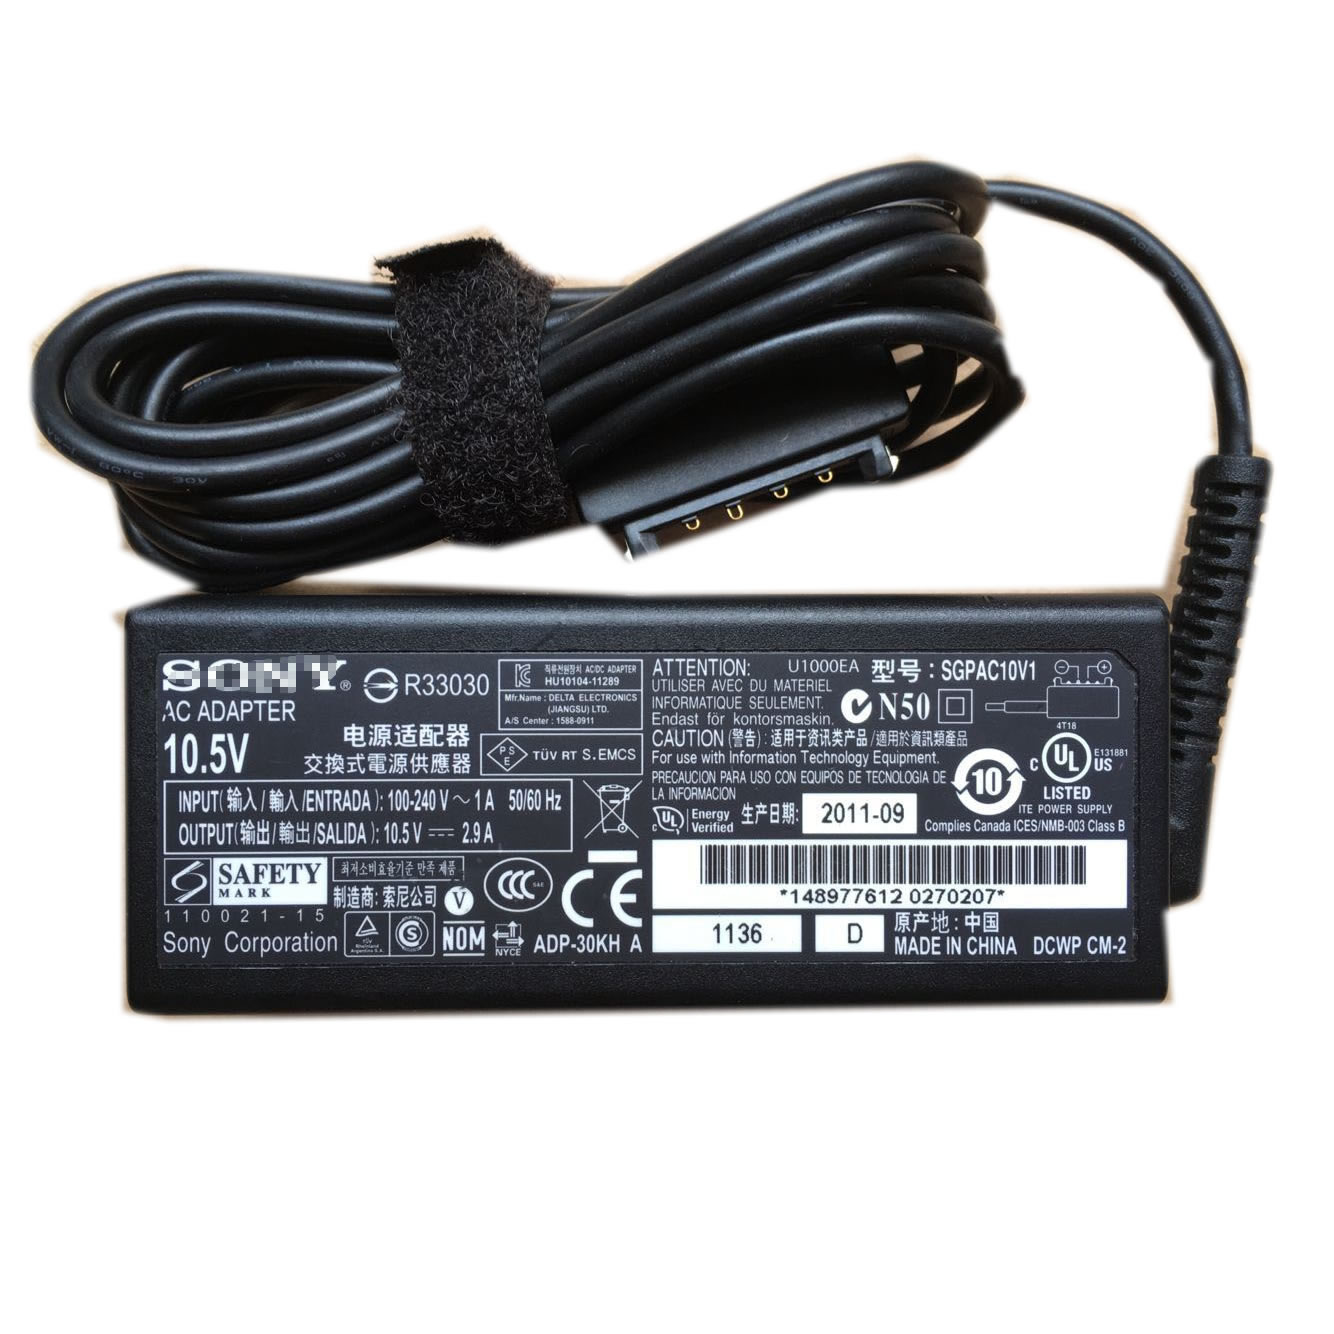 Sony SGPAC10V1 SGPAC10V2 chargeur 10.5V 2.9A 30W alimentation originale pour Sony SGPT111 SGPT112 SGPT113 tablette séries